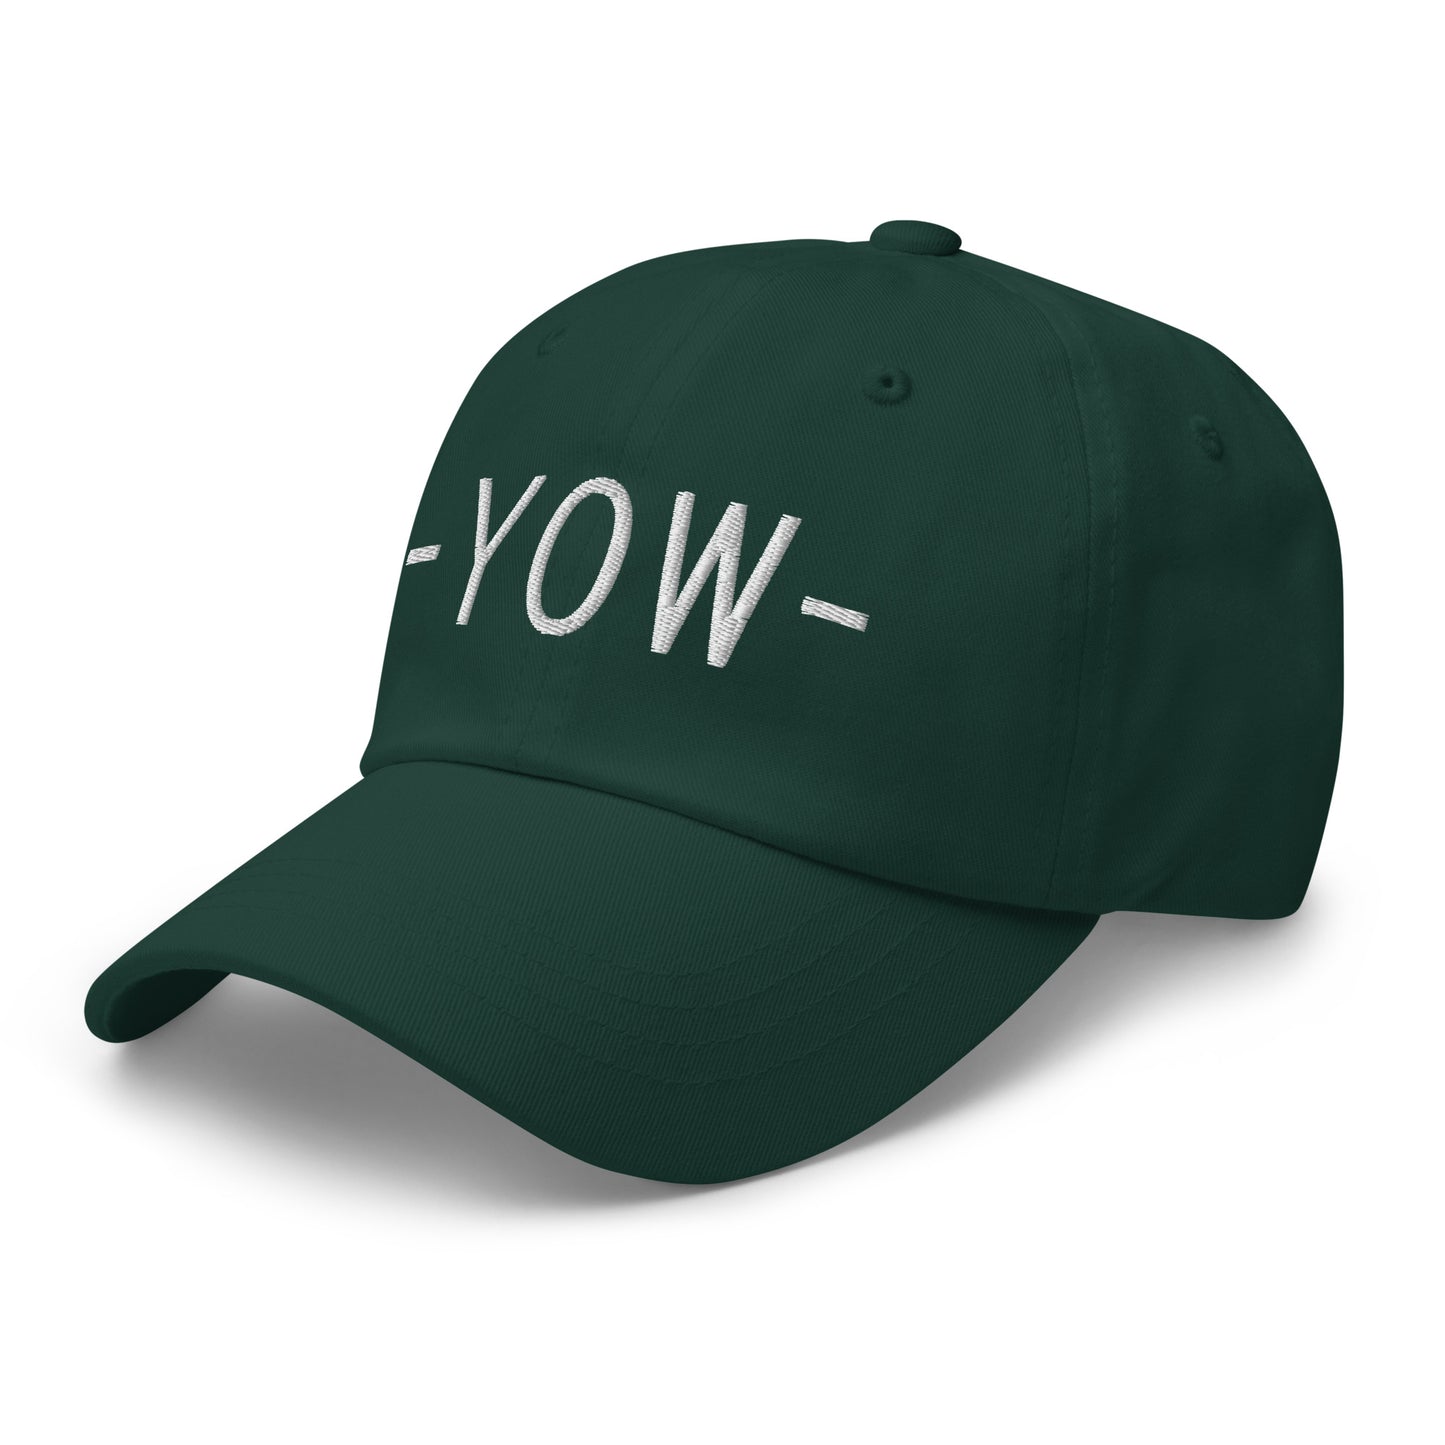 Souvenir Baseball Cap - White • YOW Ottawa • YHM Designs - Image 18